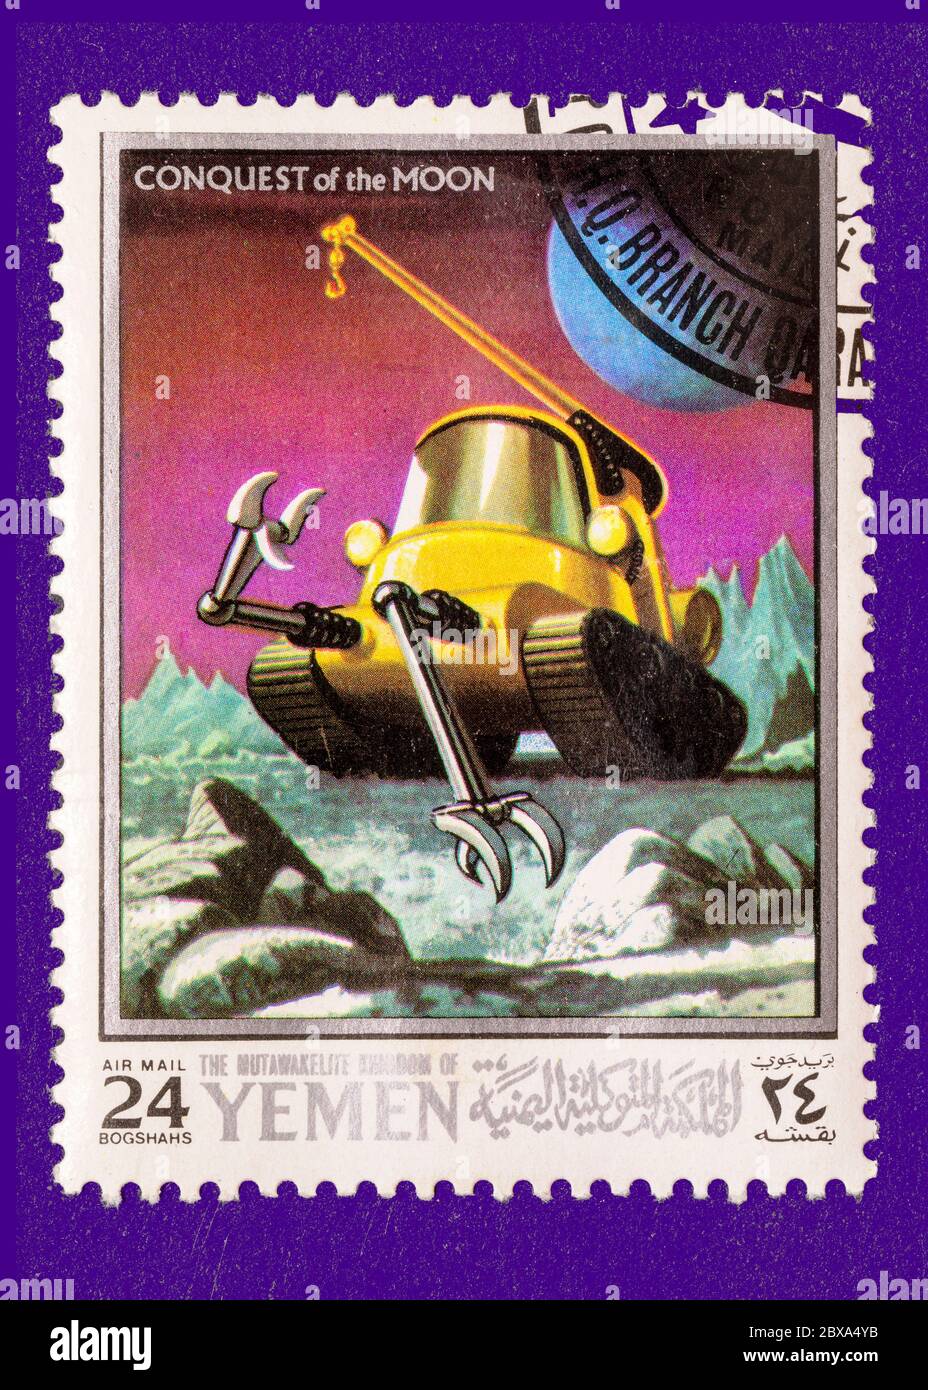 Vintage annullato francobollo dal Yemen circa 1969. Presenta scene di viaggio spaziale della serie conquista della luna. Foto Stock